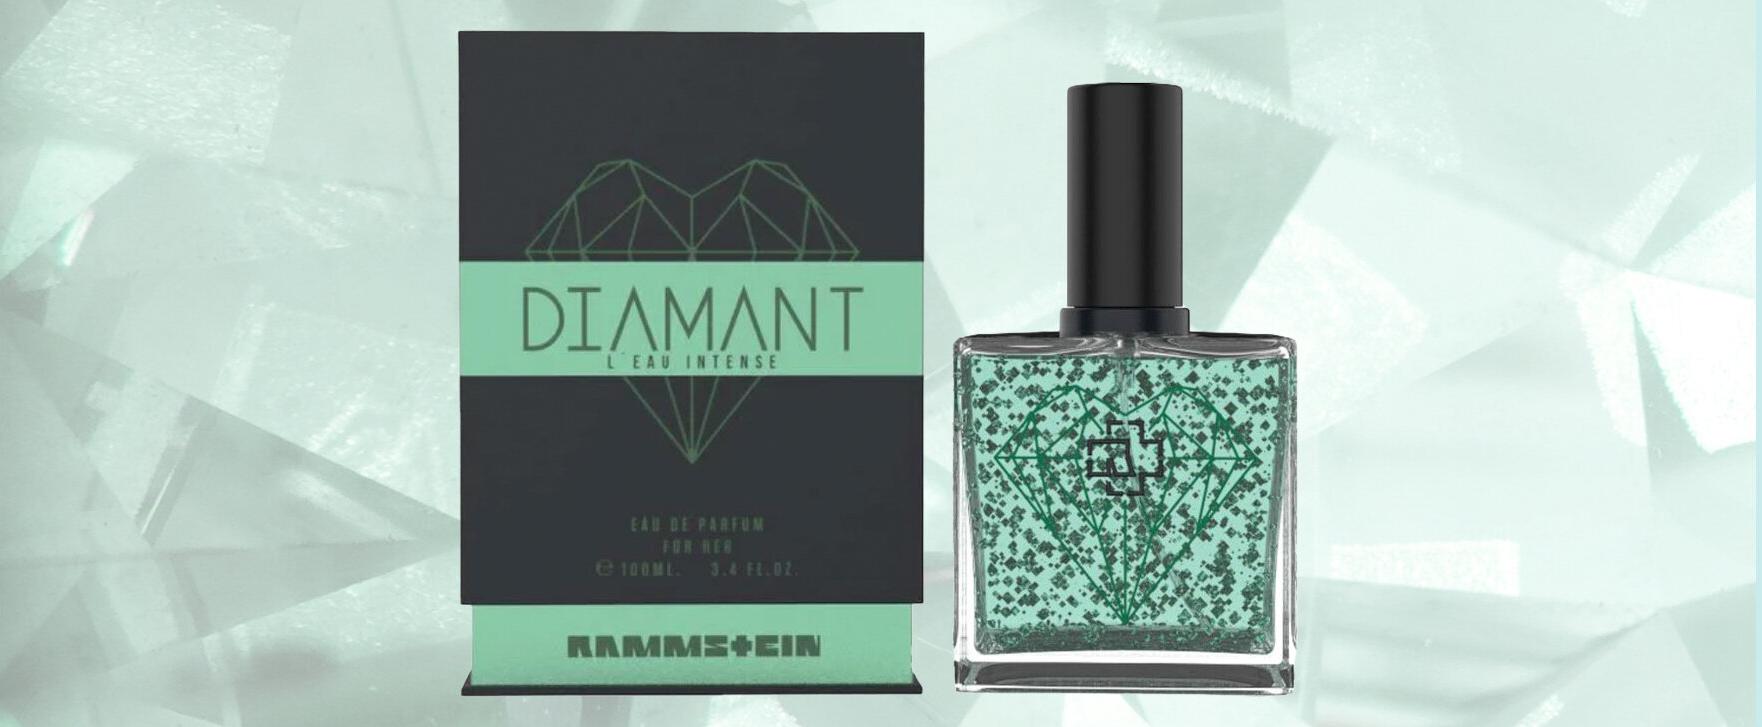 „Diamant L'Eau Intense“ — neues blumig-grünes Damenparfum von Rammstein zu gewinnen